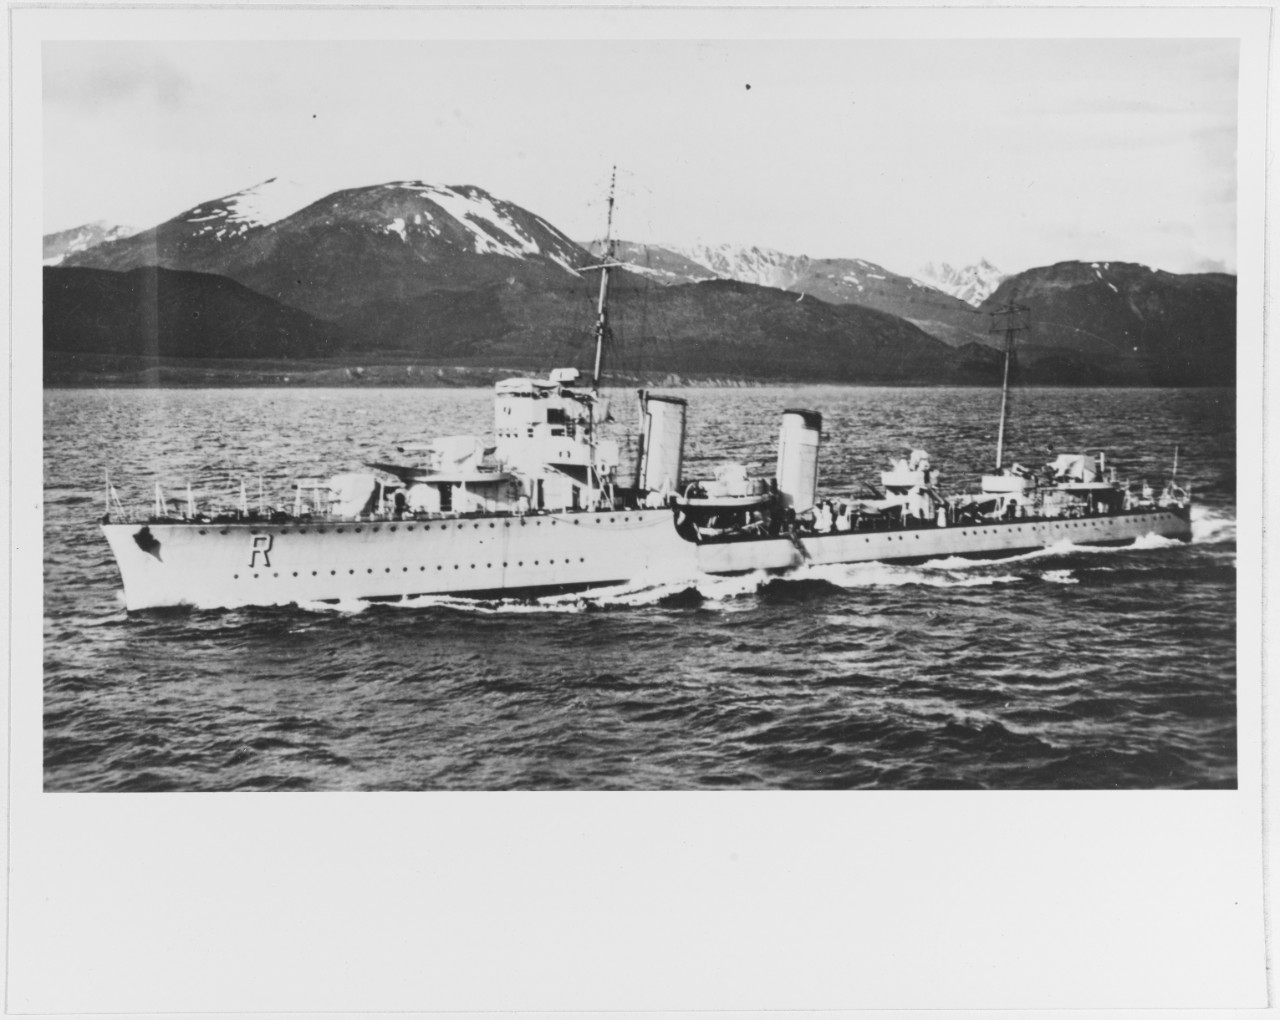 RIQUELME (Chilean destroyer, 1928)